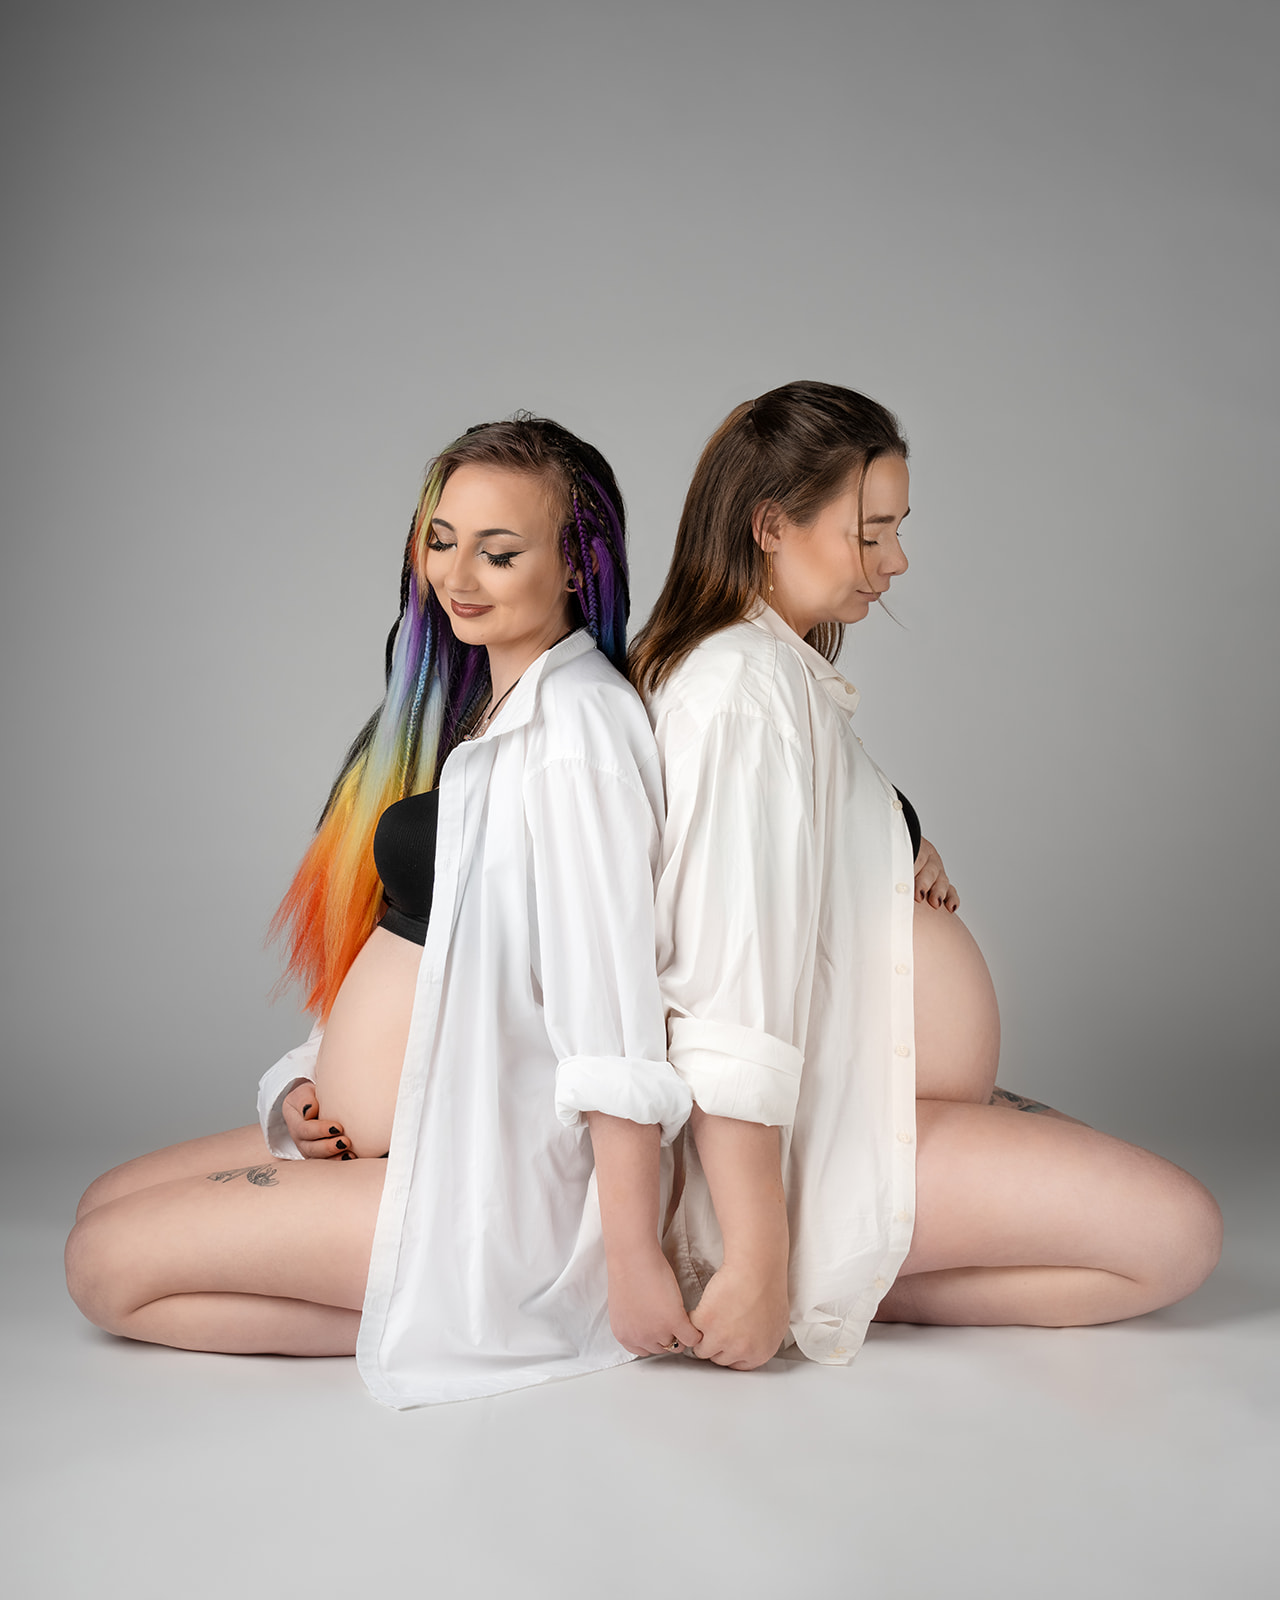 søstre der sidder på gulv gravide på samme tid